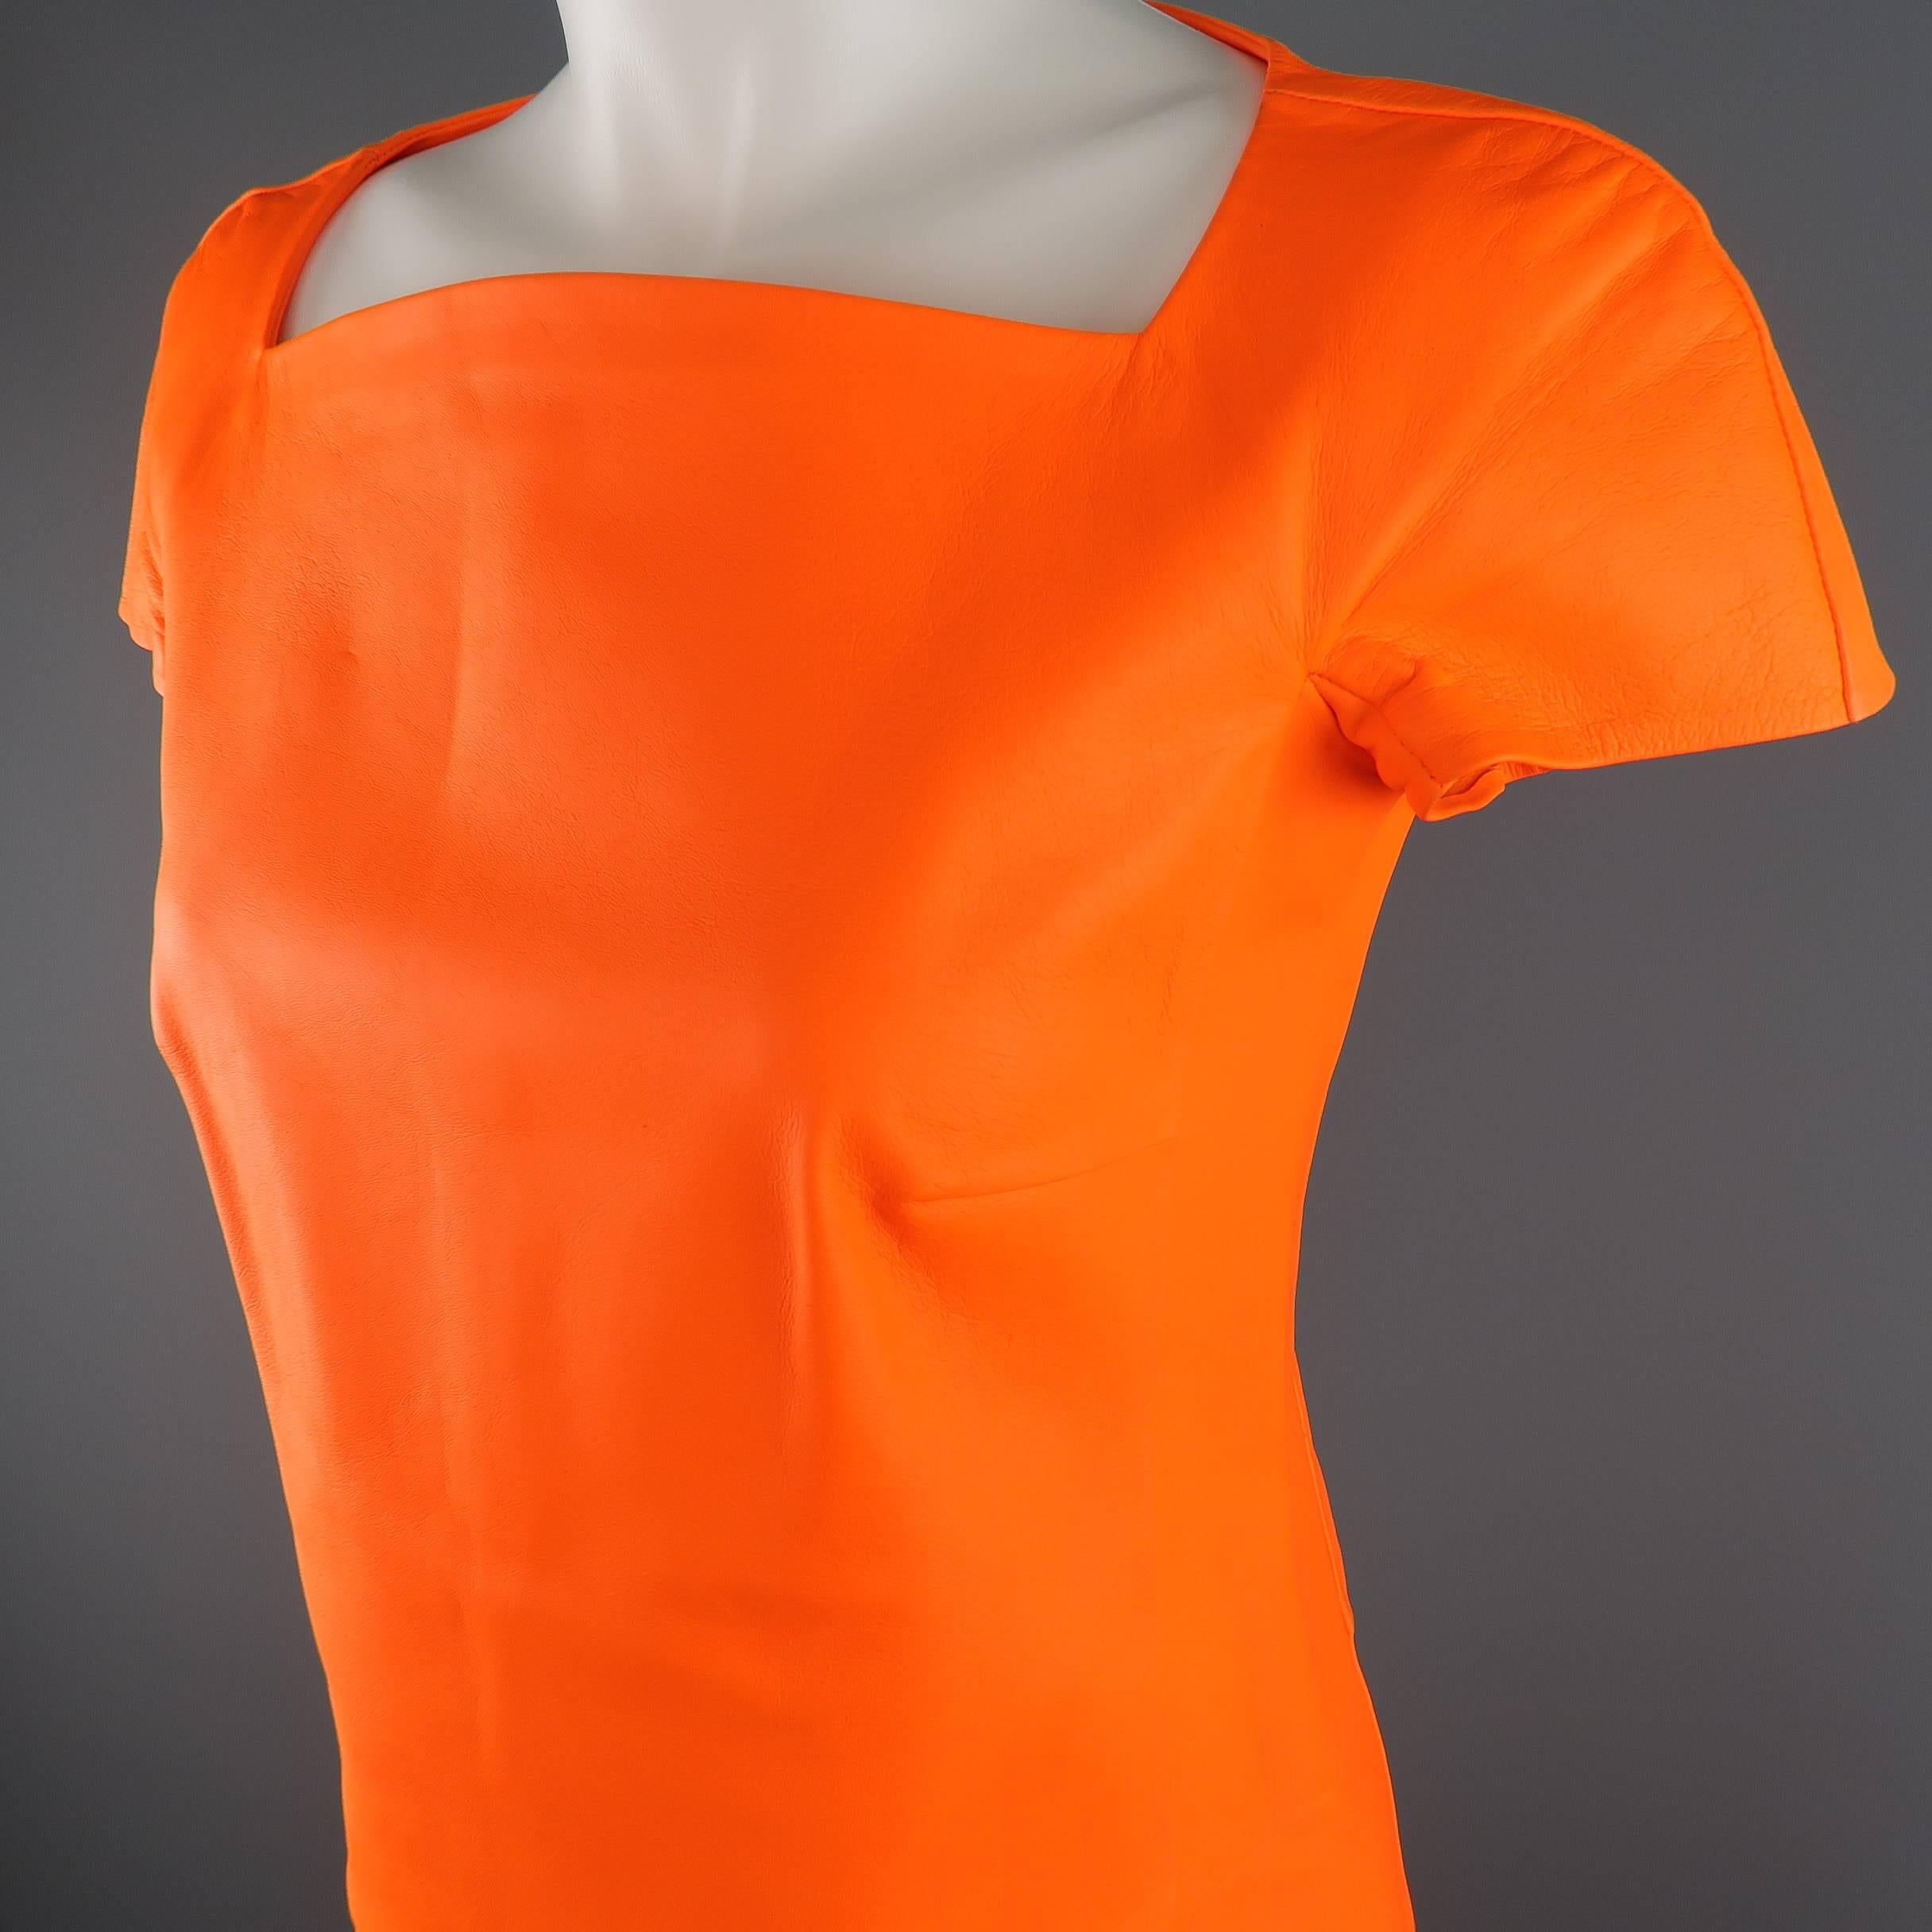 Women's Ralph Lauren Neon Orange Leather A Line Dress, Spring 2014 Runway